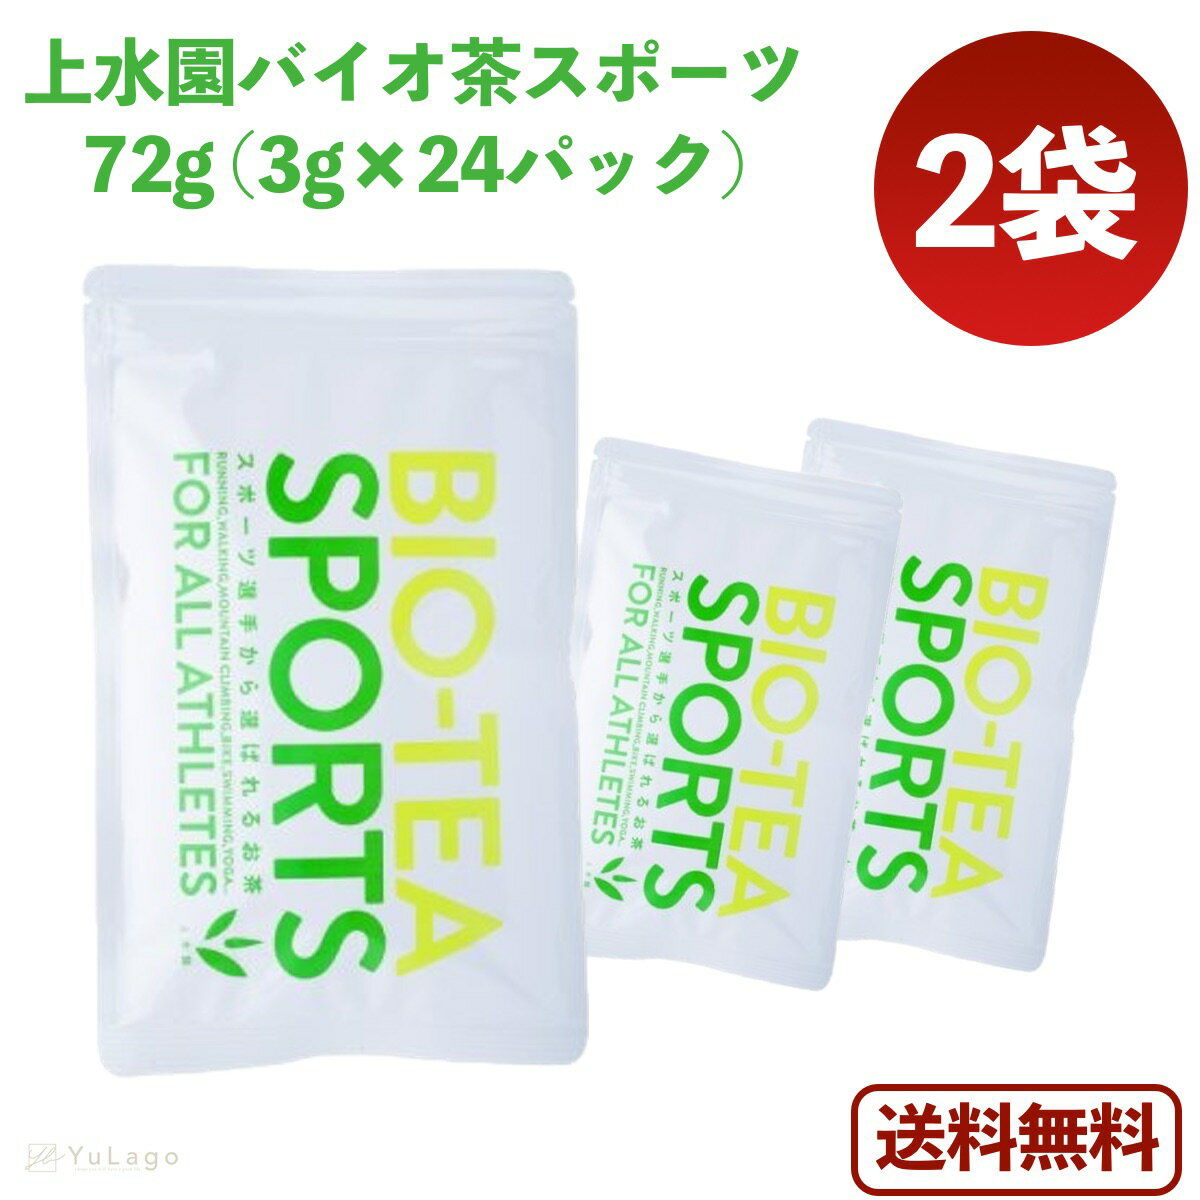 上水園 バイオ茶スポーツ 72g(3g×24パック) 2袋セ